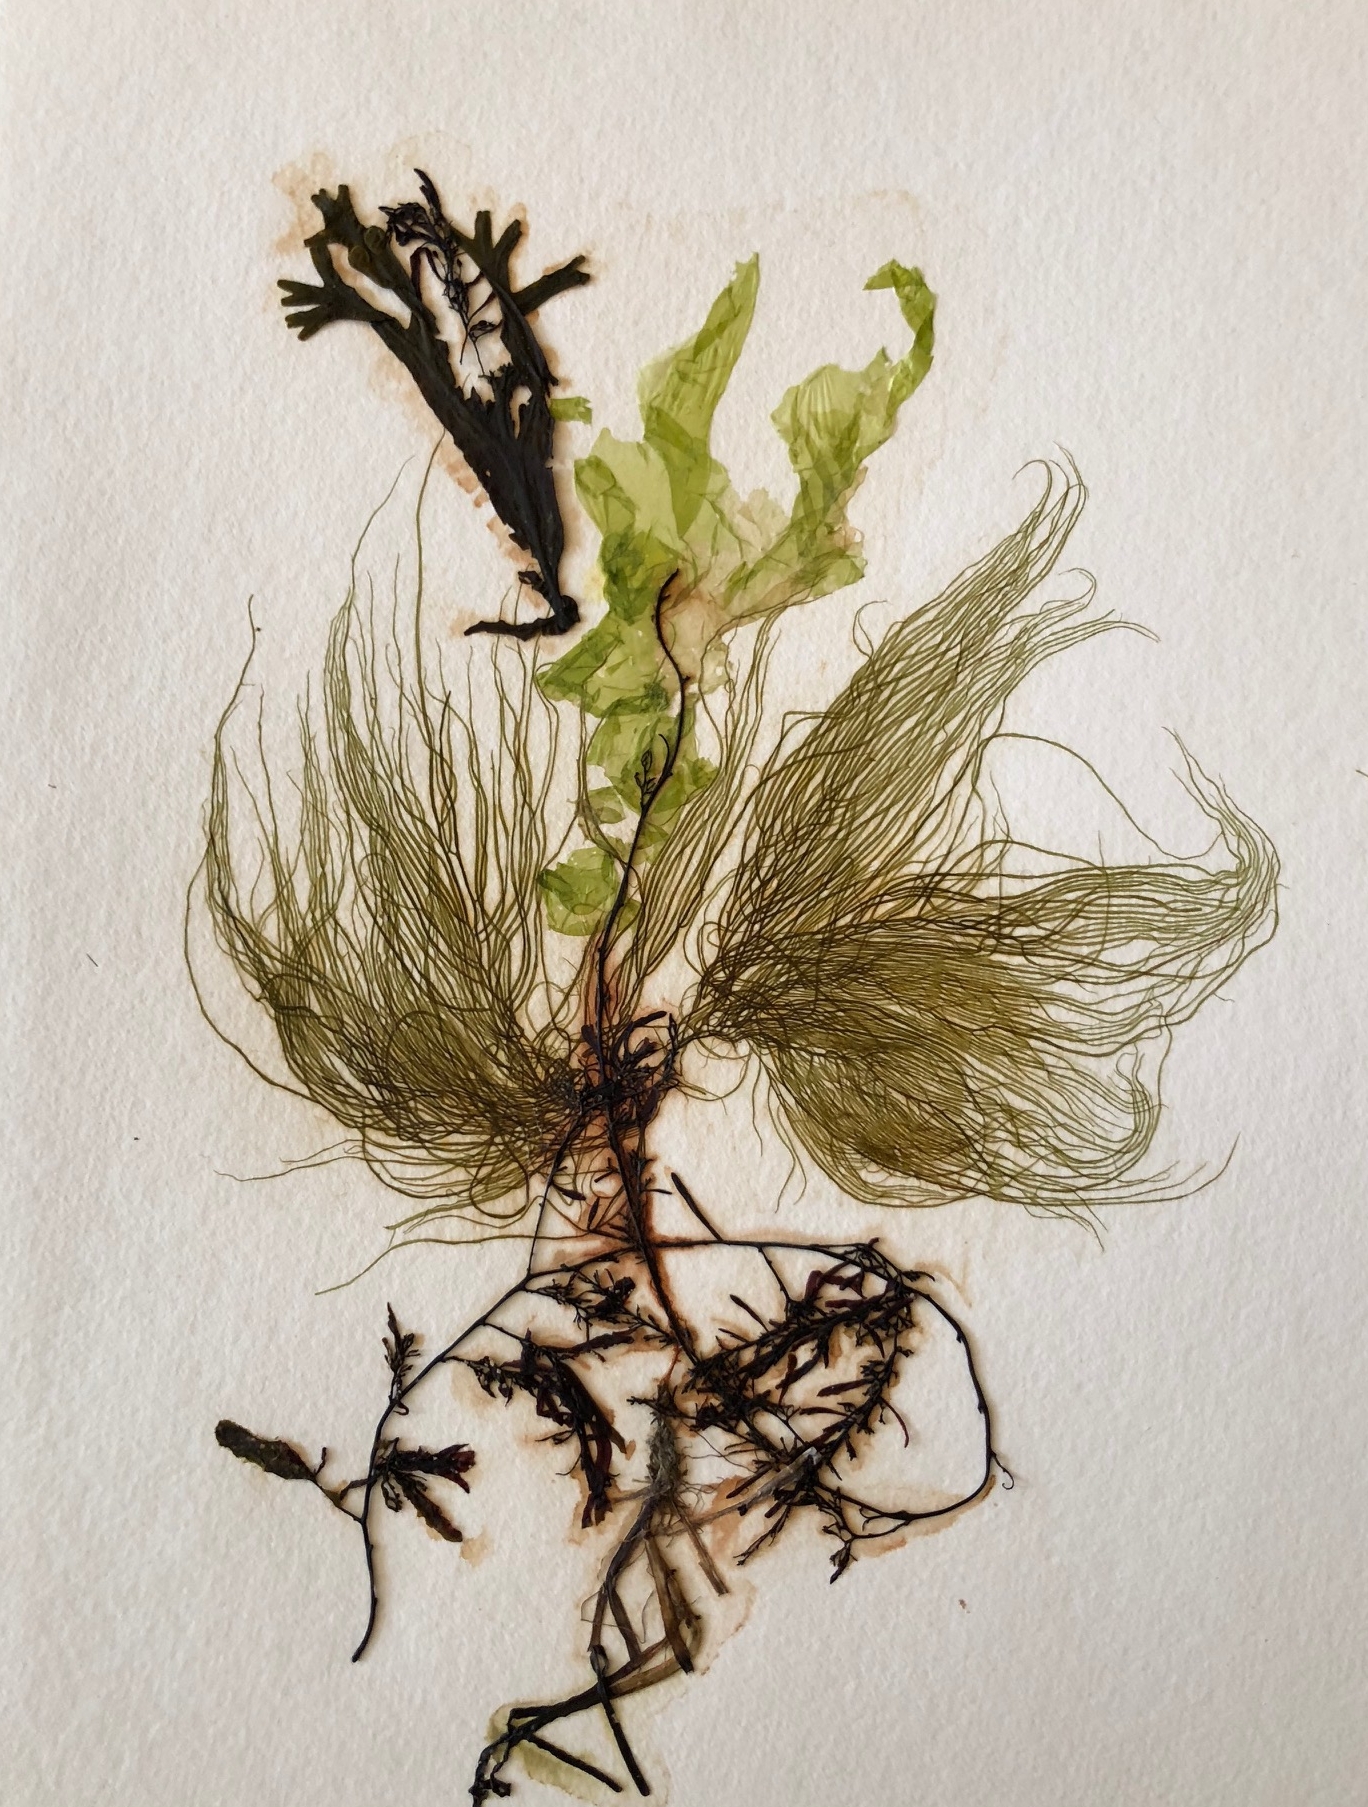 Seaweed 6/13, 11x14